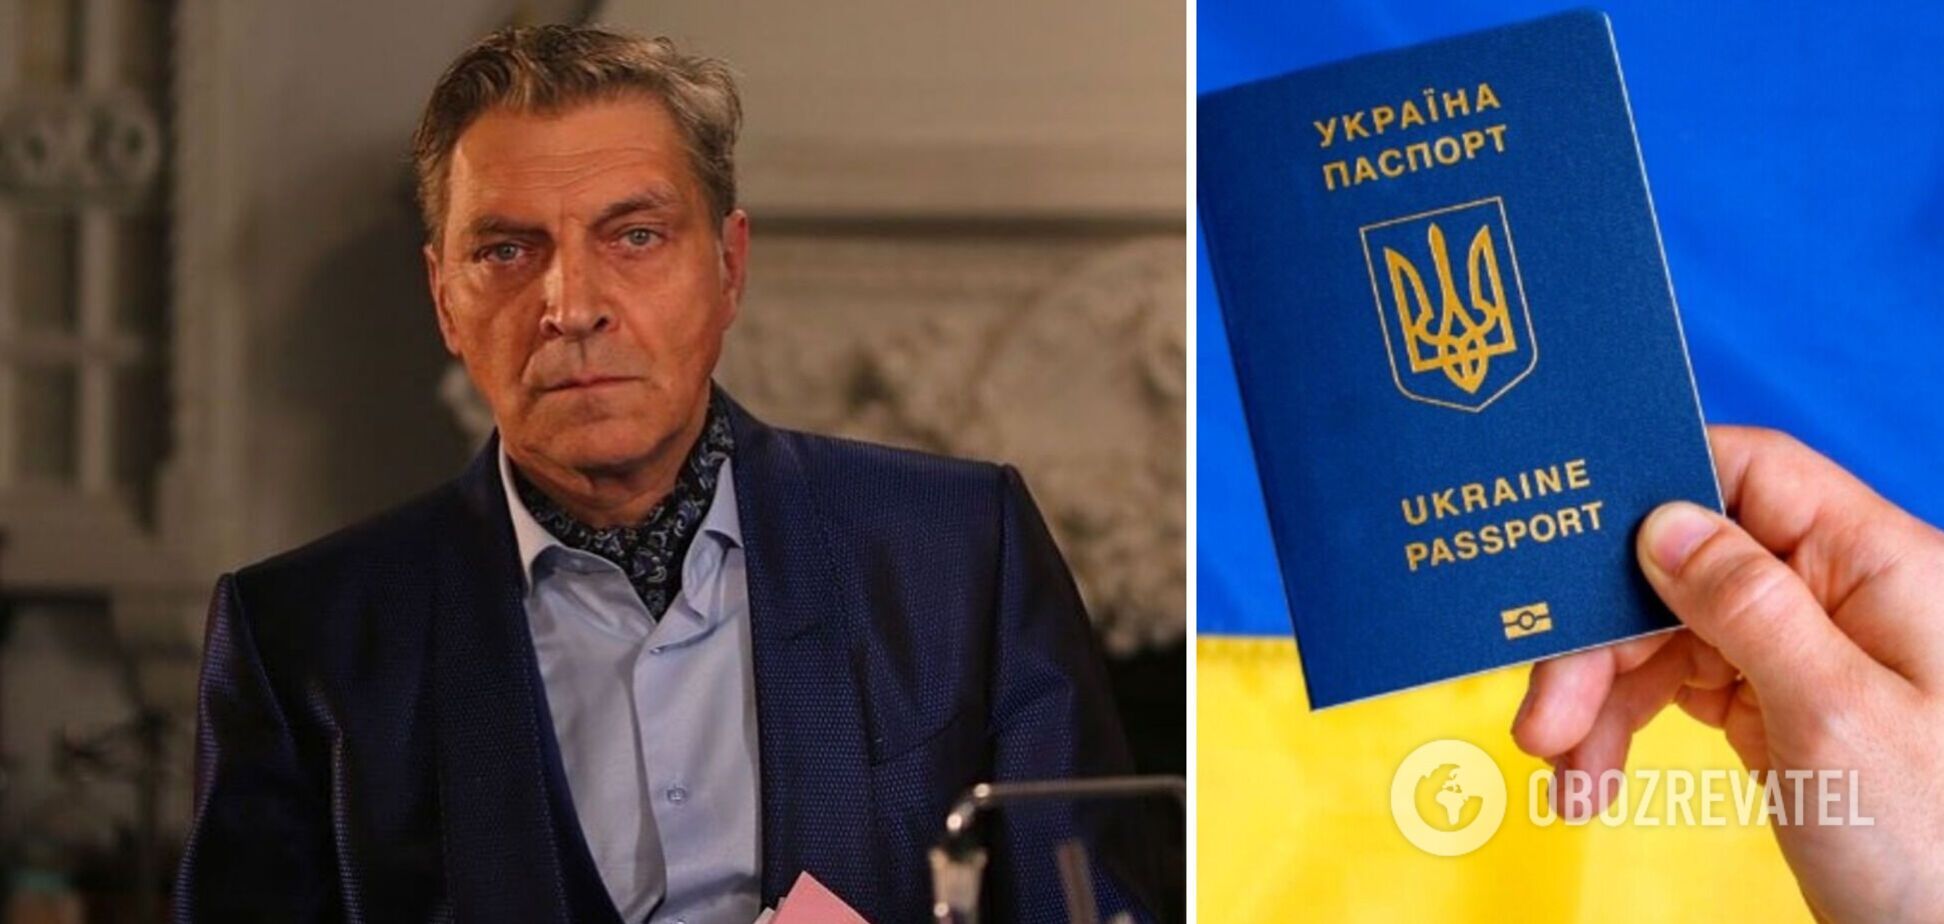 Невзоров показал паспорт Украины. Видео